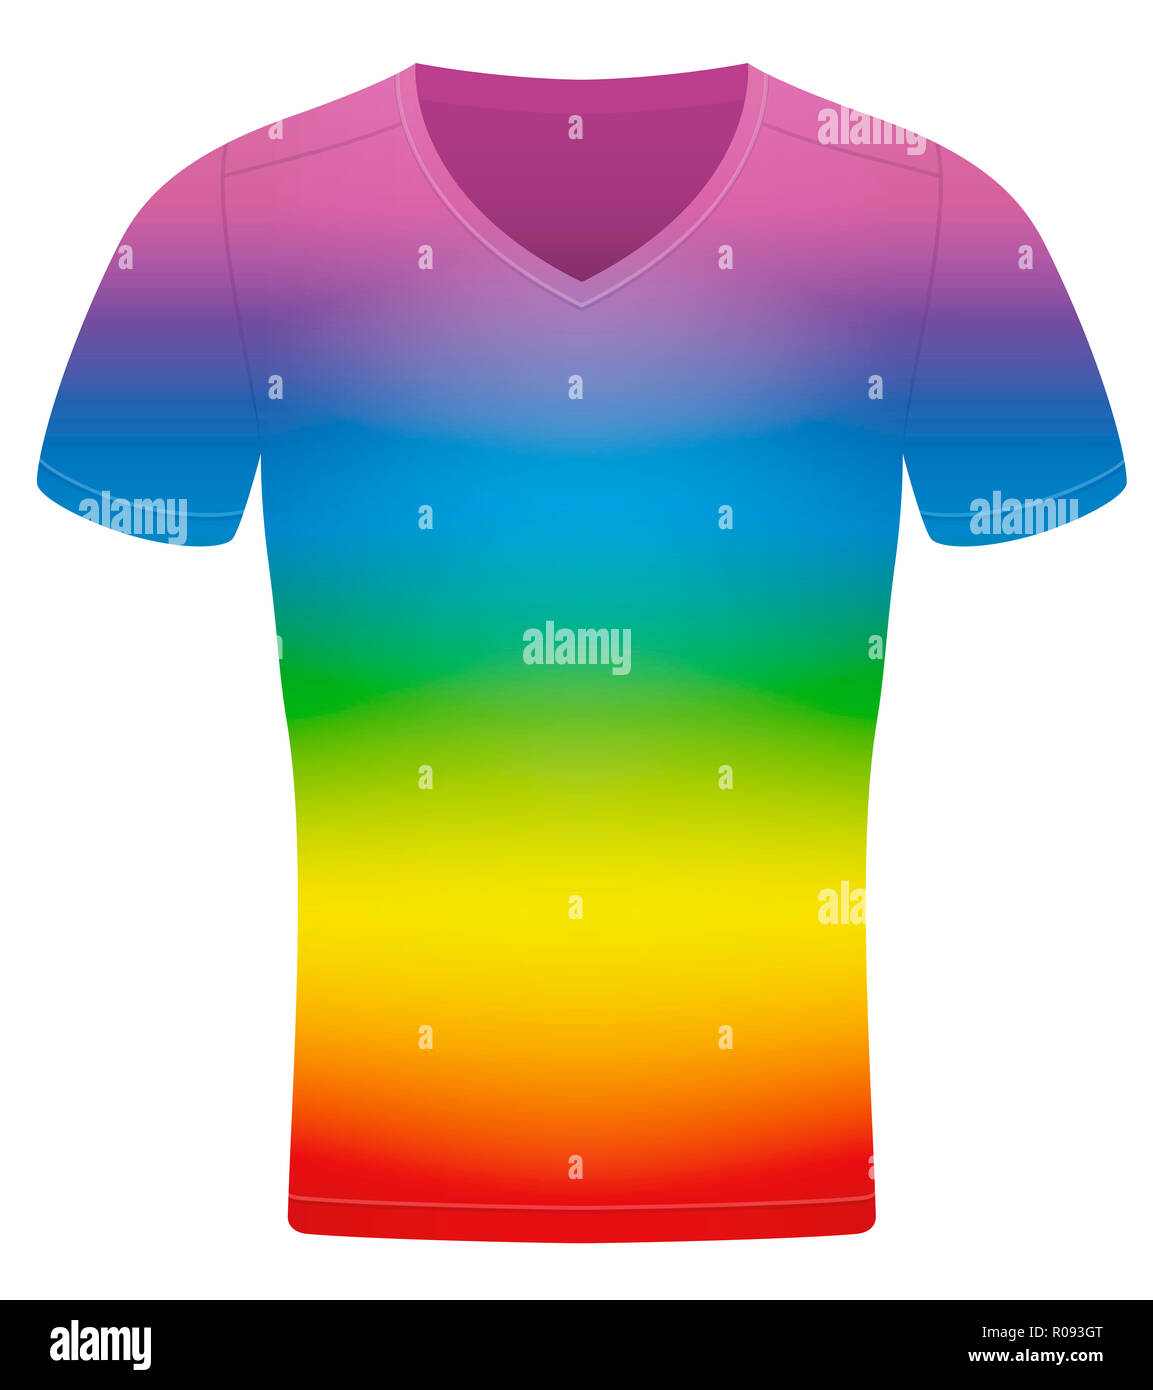 Rainbow farbige T-Shirt - Abbildung auf weißem Hintergrund. Stockfoto